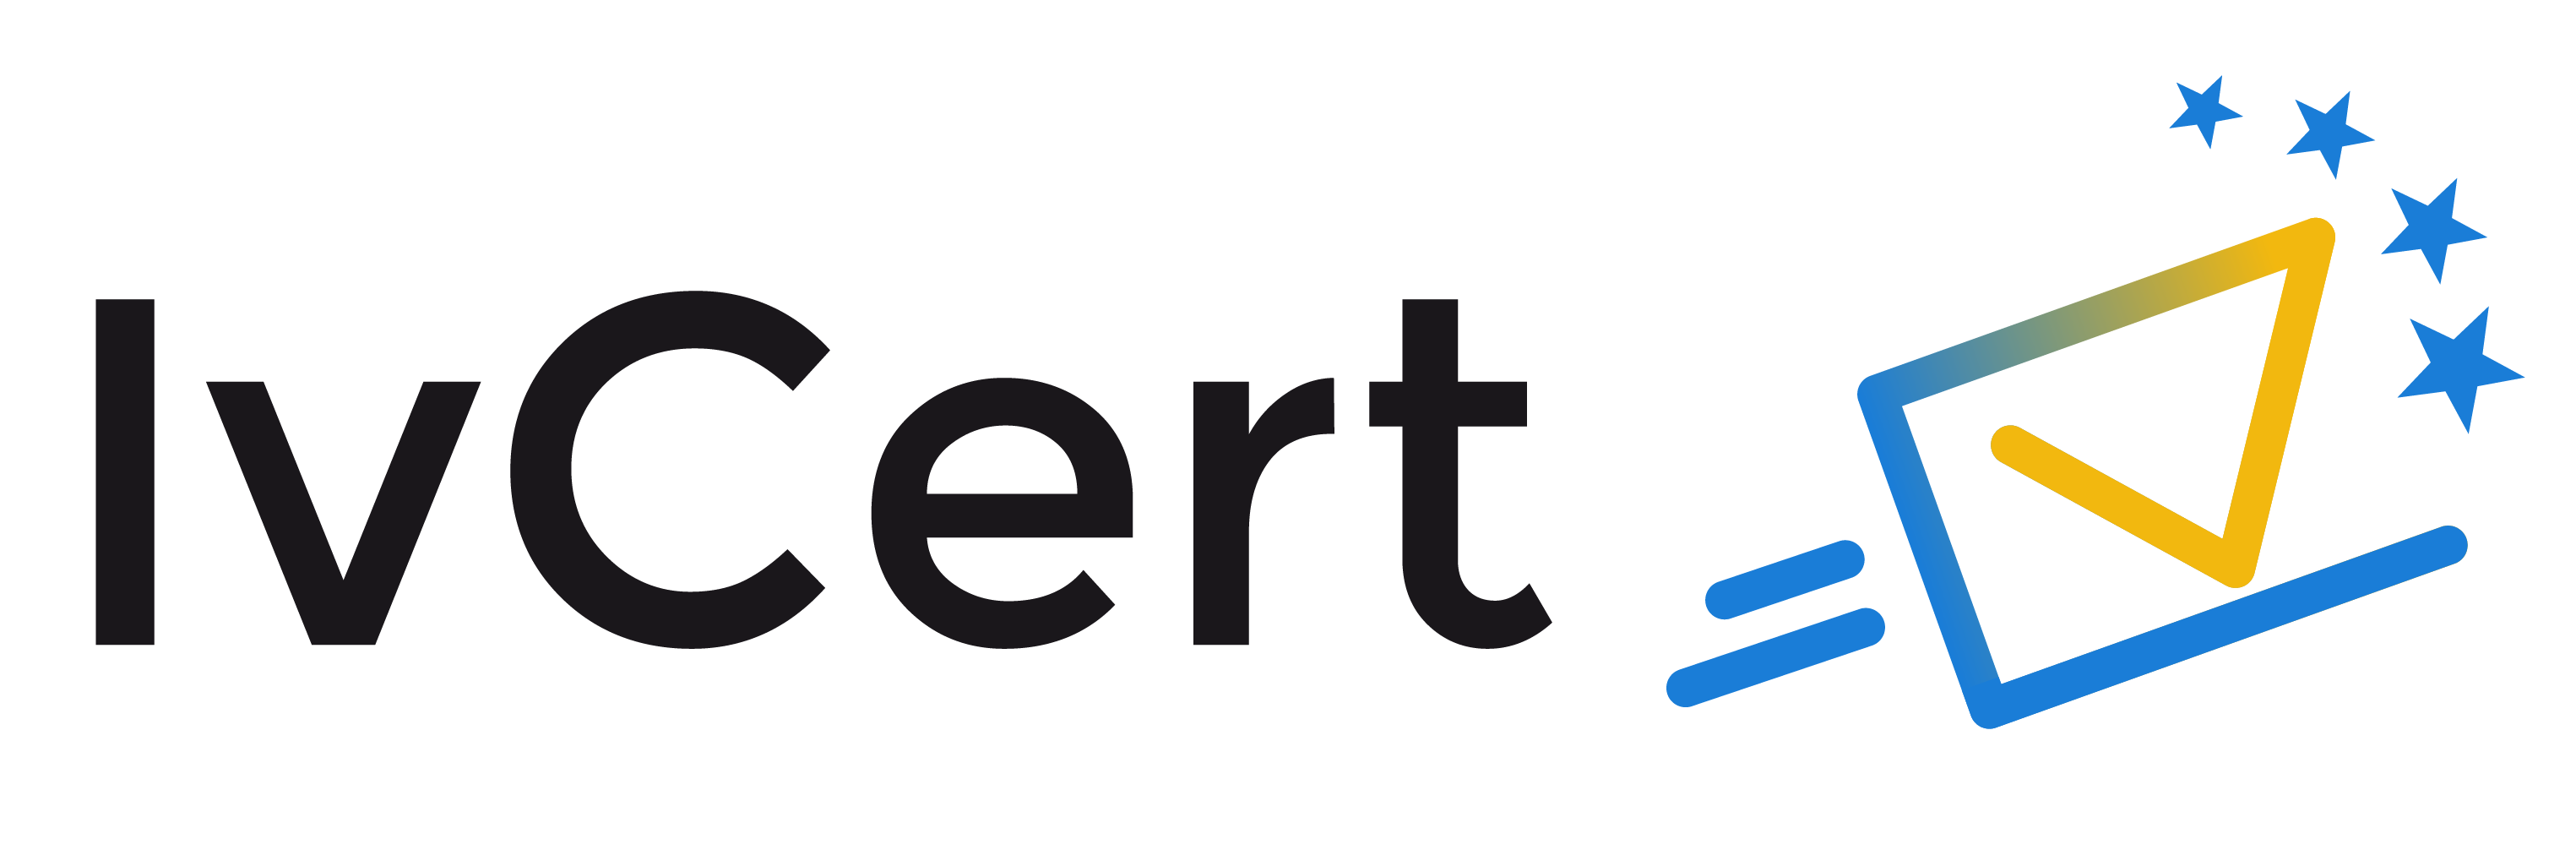 Ivcert plataforma de firma electrónica y envío certificado